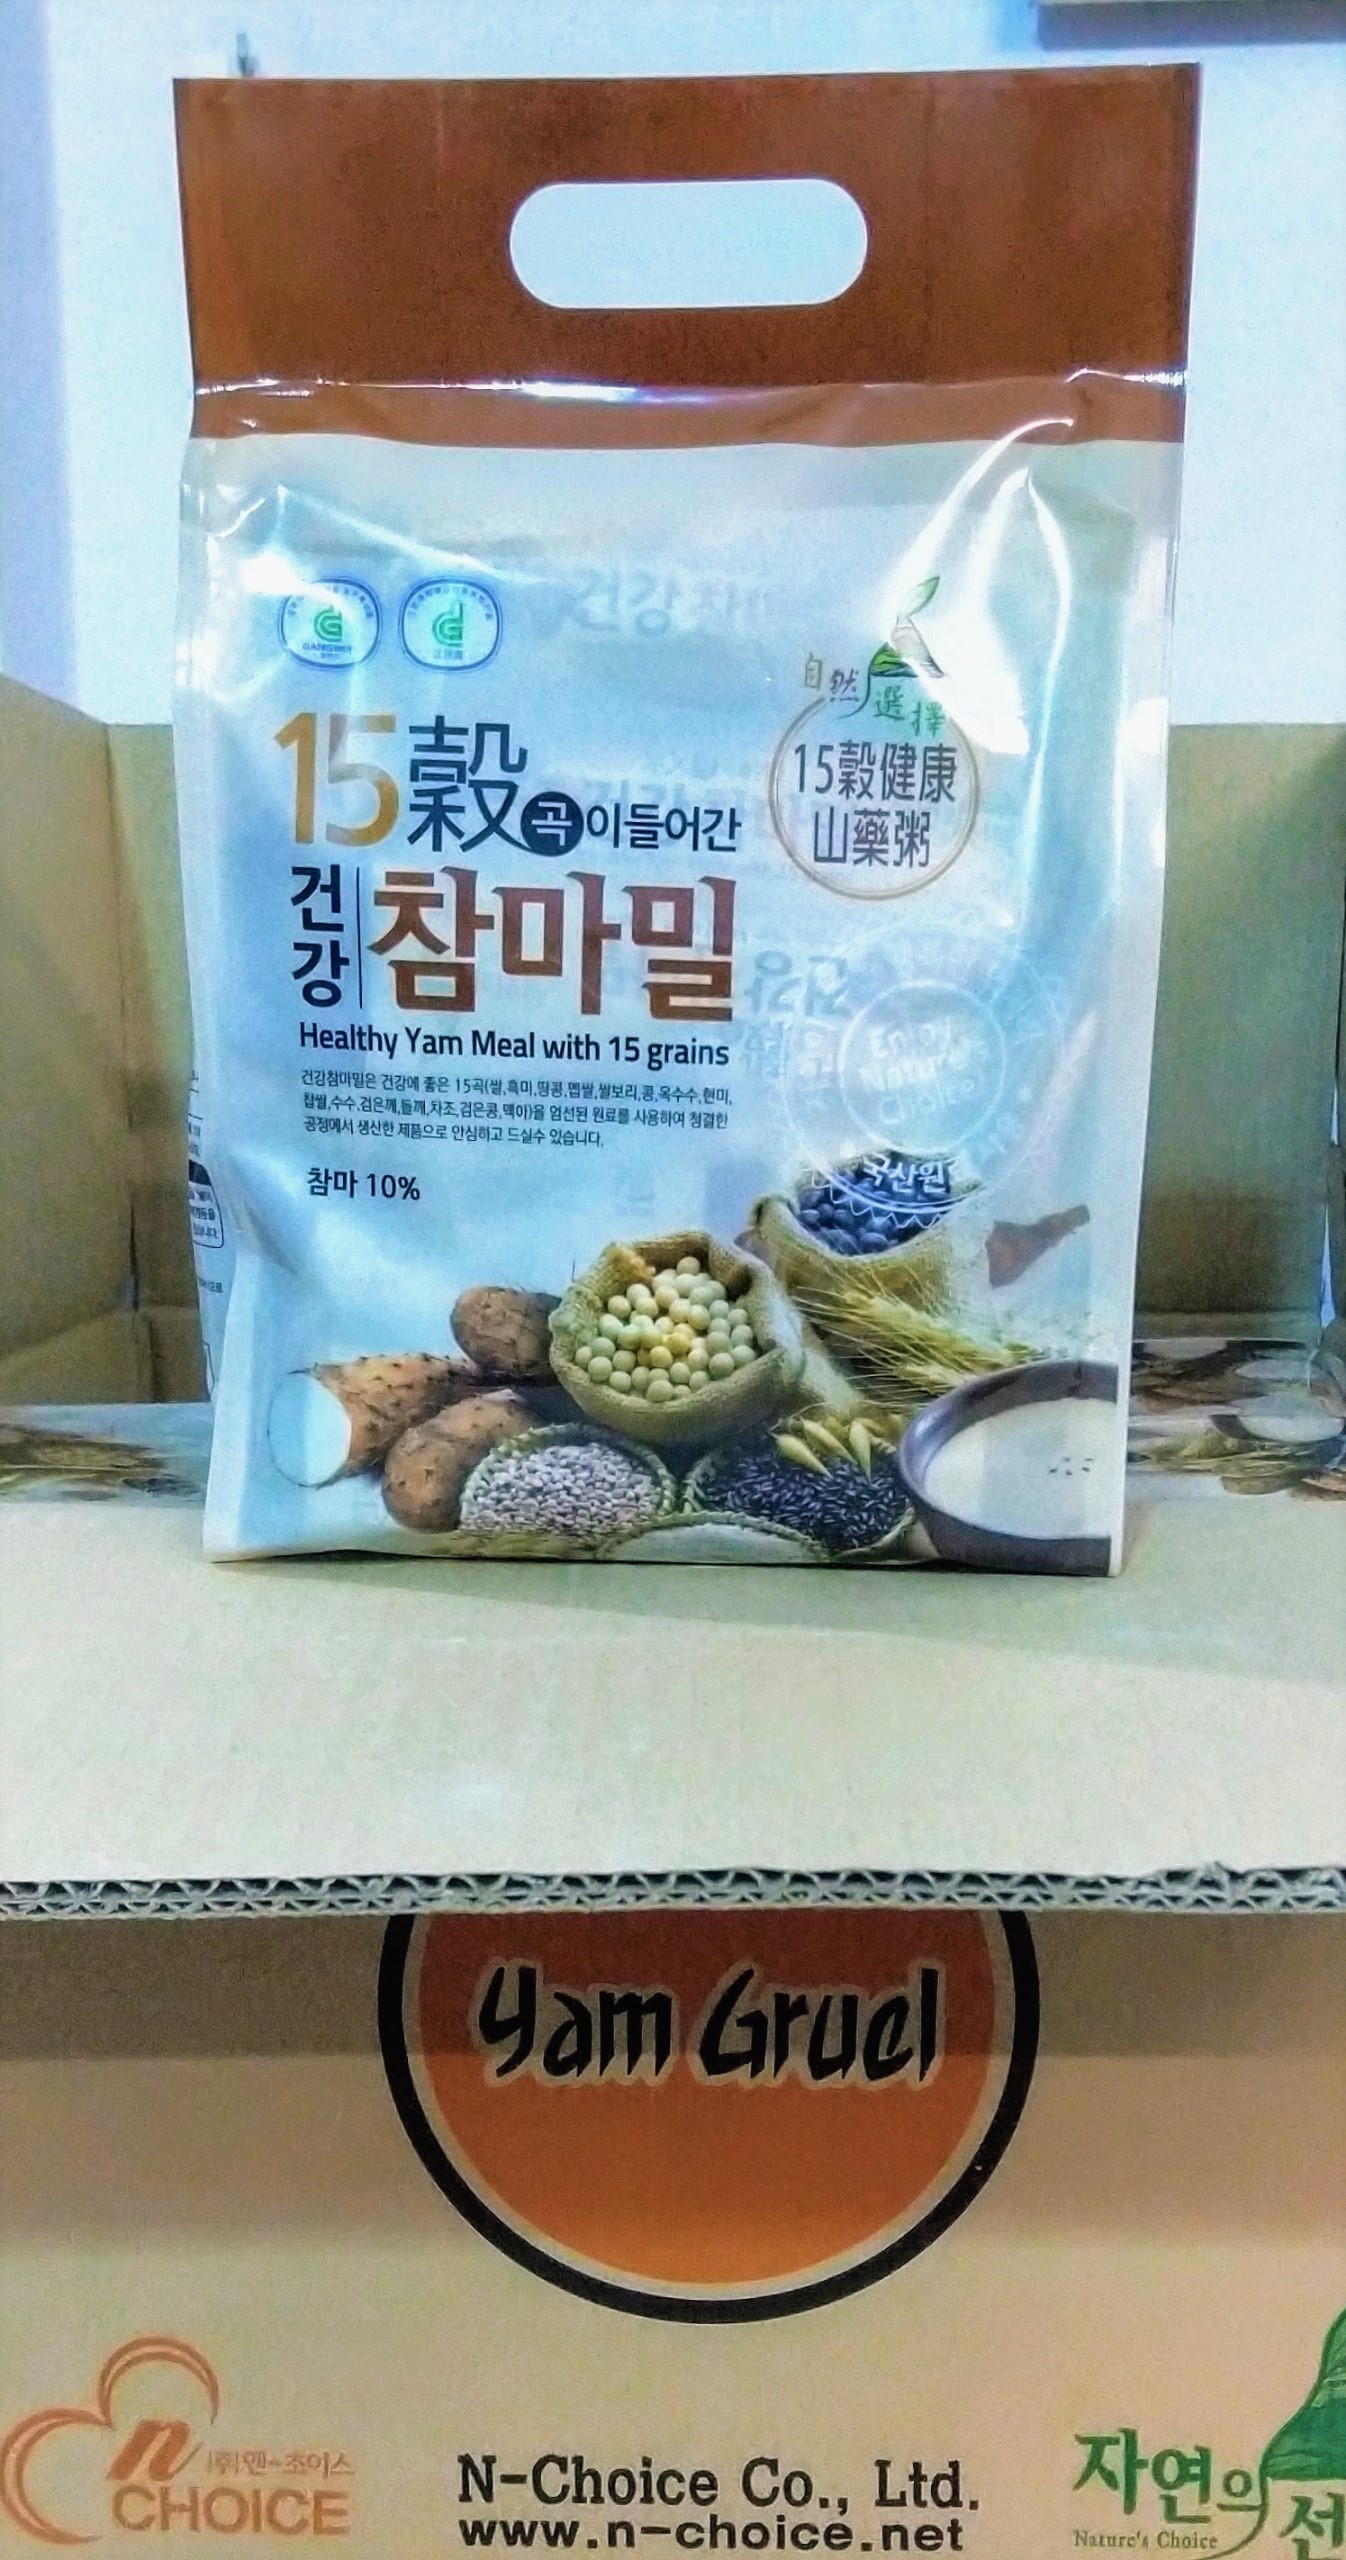 Bột ngũ cốc Hàn Quốc N-Choice 15 loại hạt 960g - bao 32 gói x 30g / gói